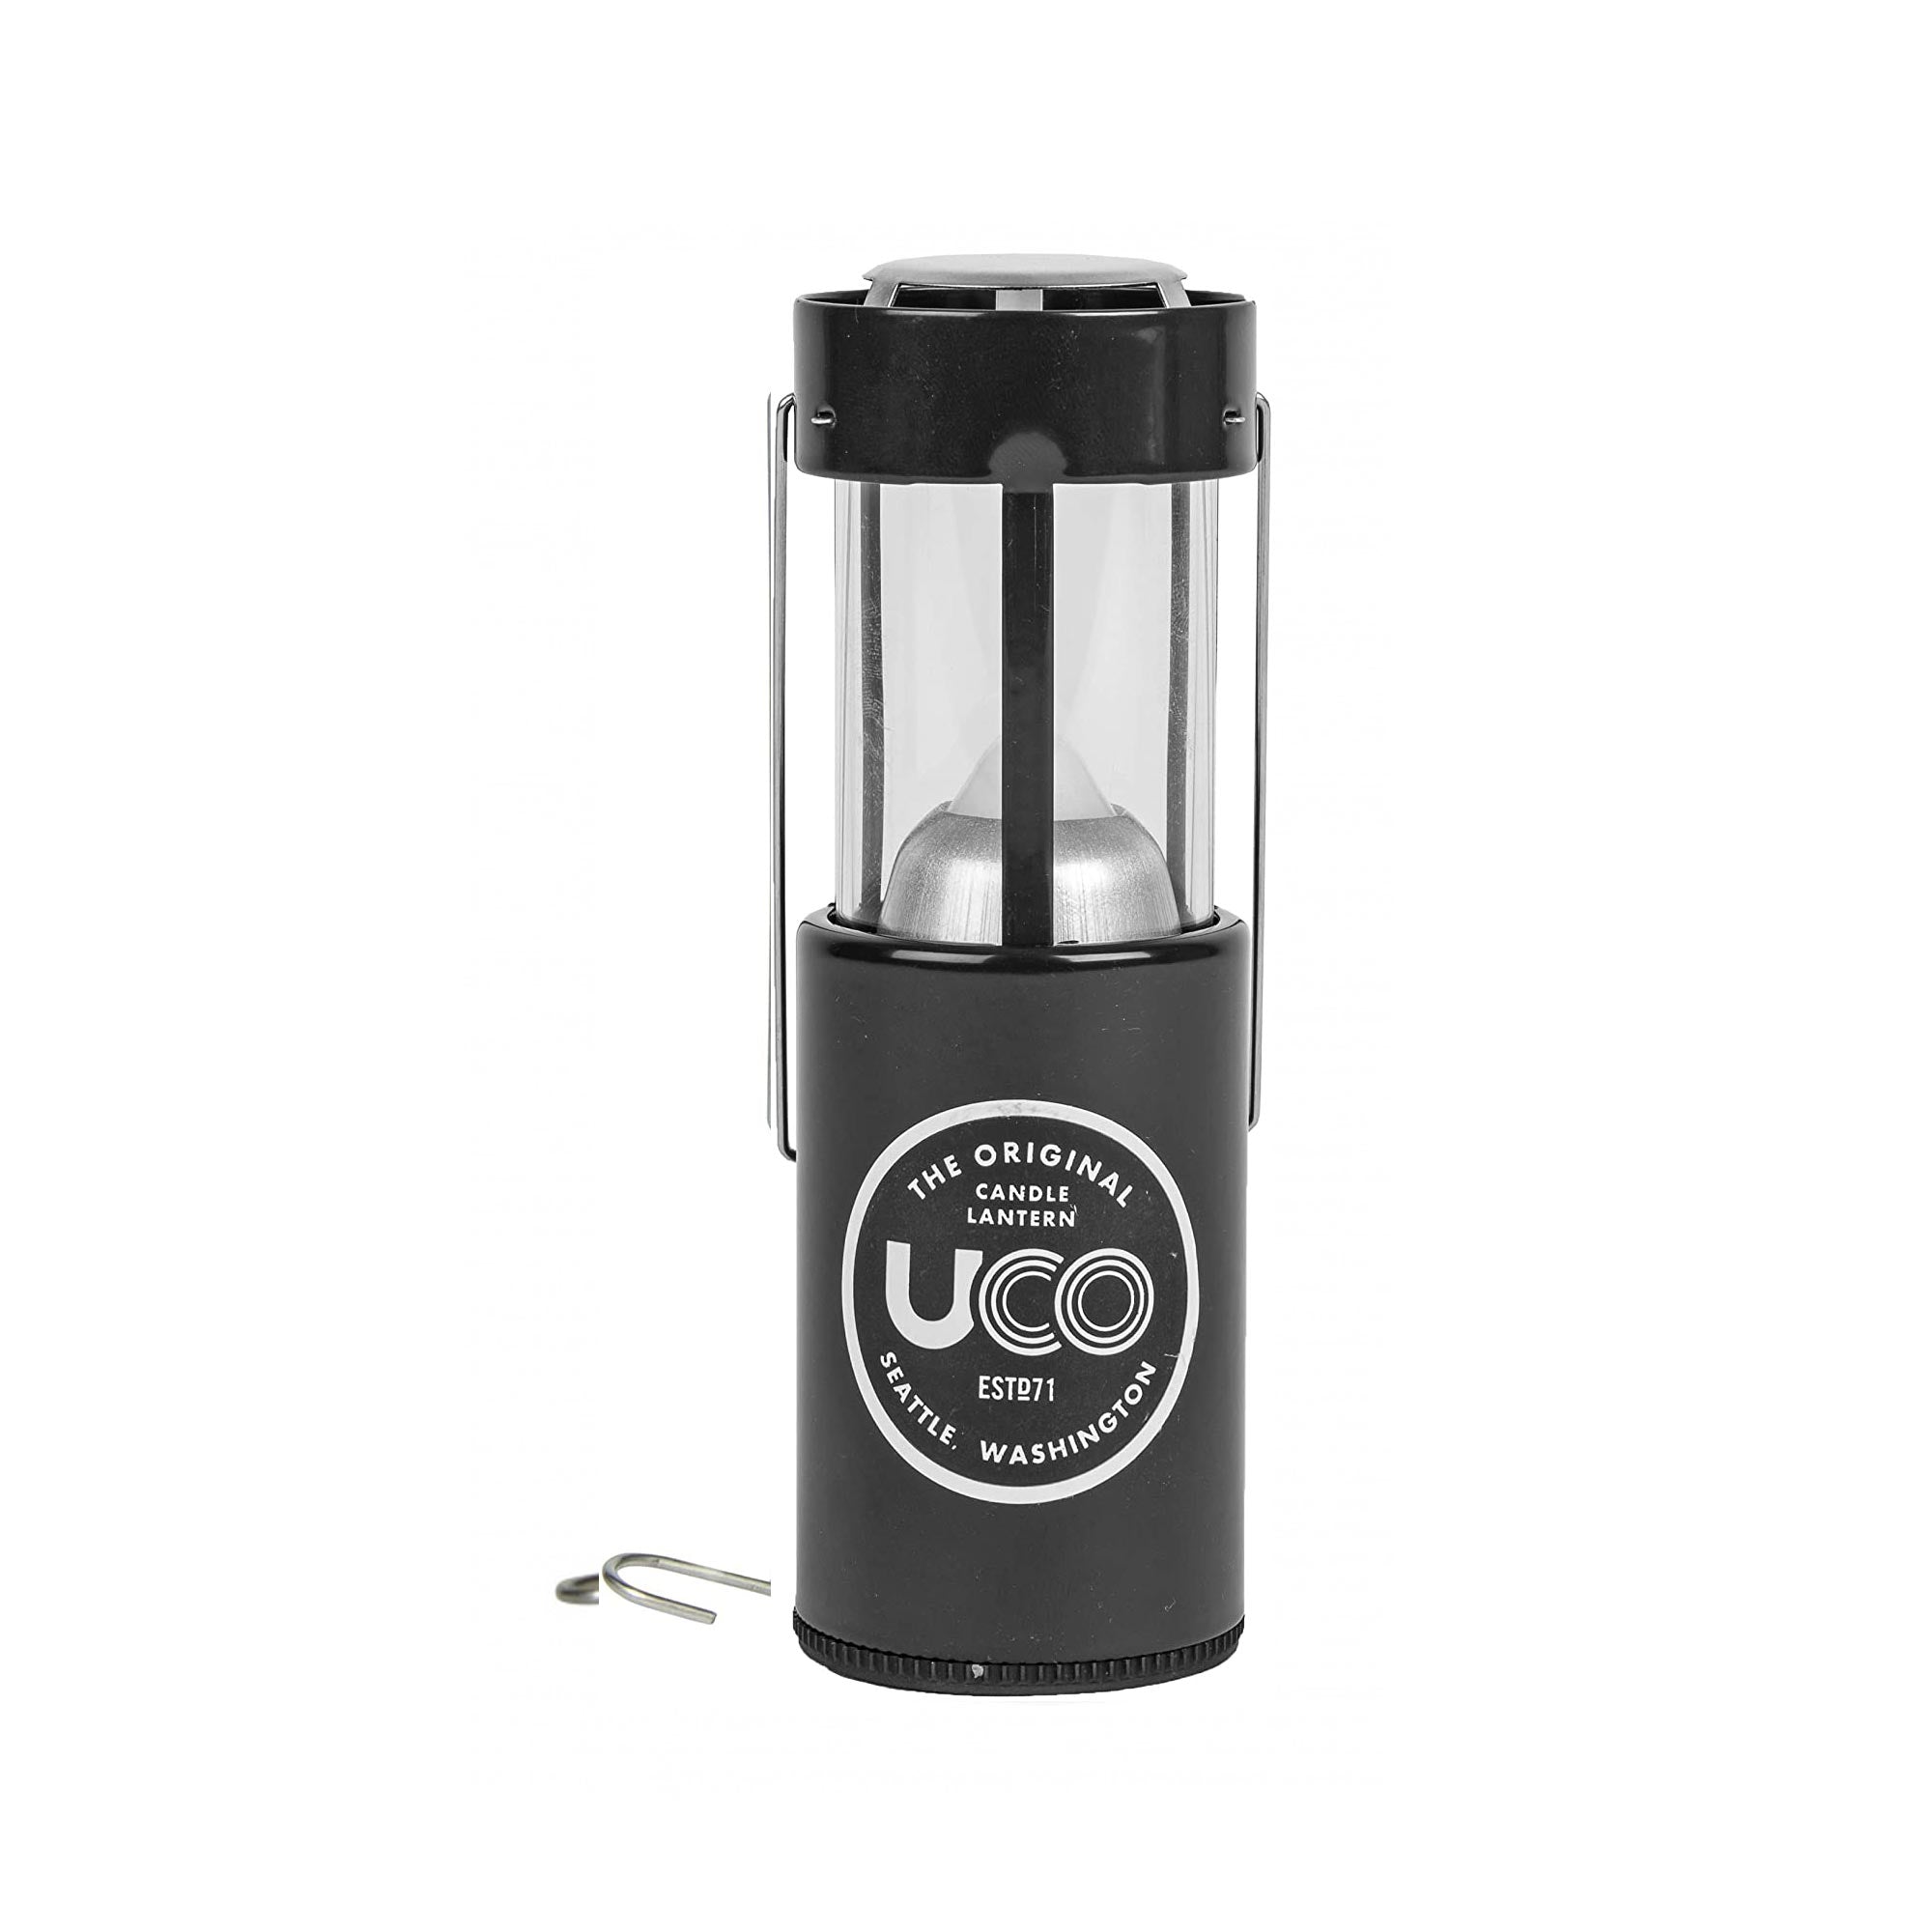 Uco Candle Lantern